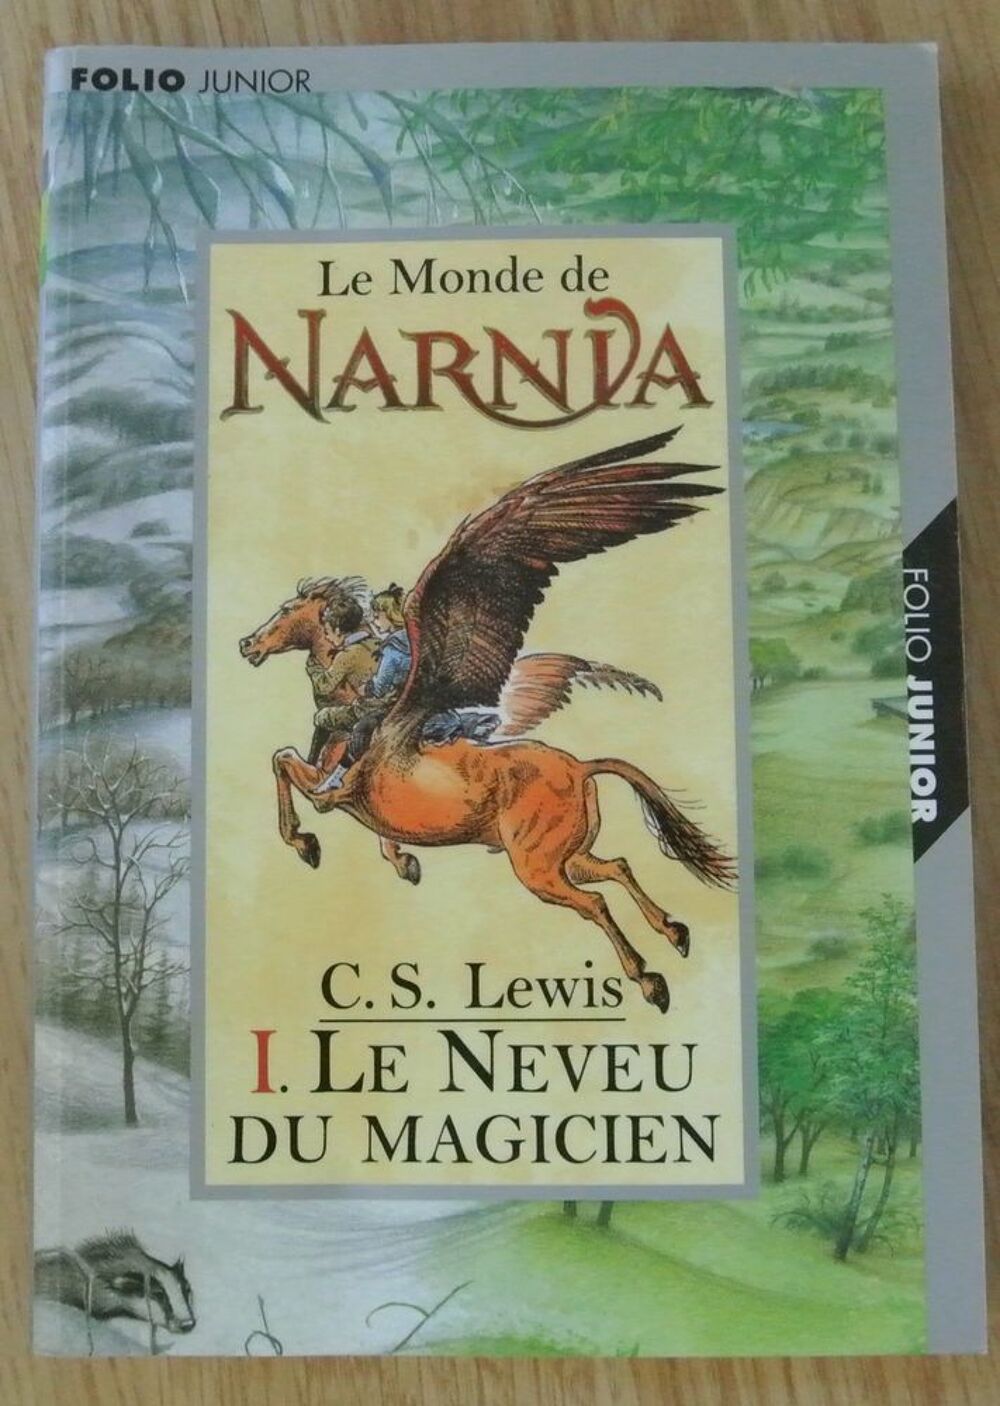 Le Monde de Narnia de C.S LEWIS
Livres et BD